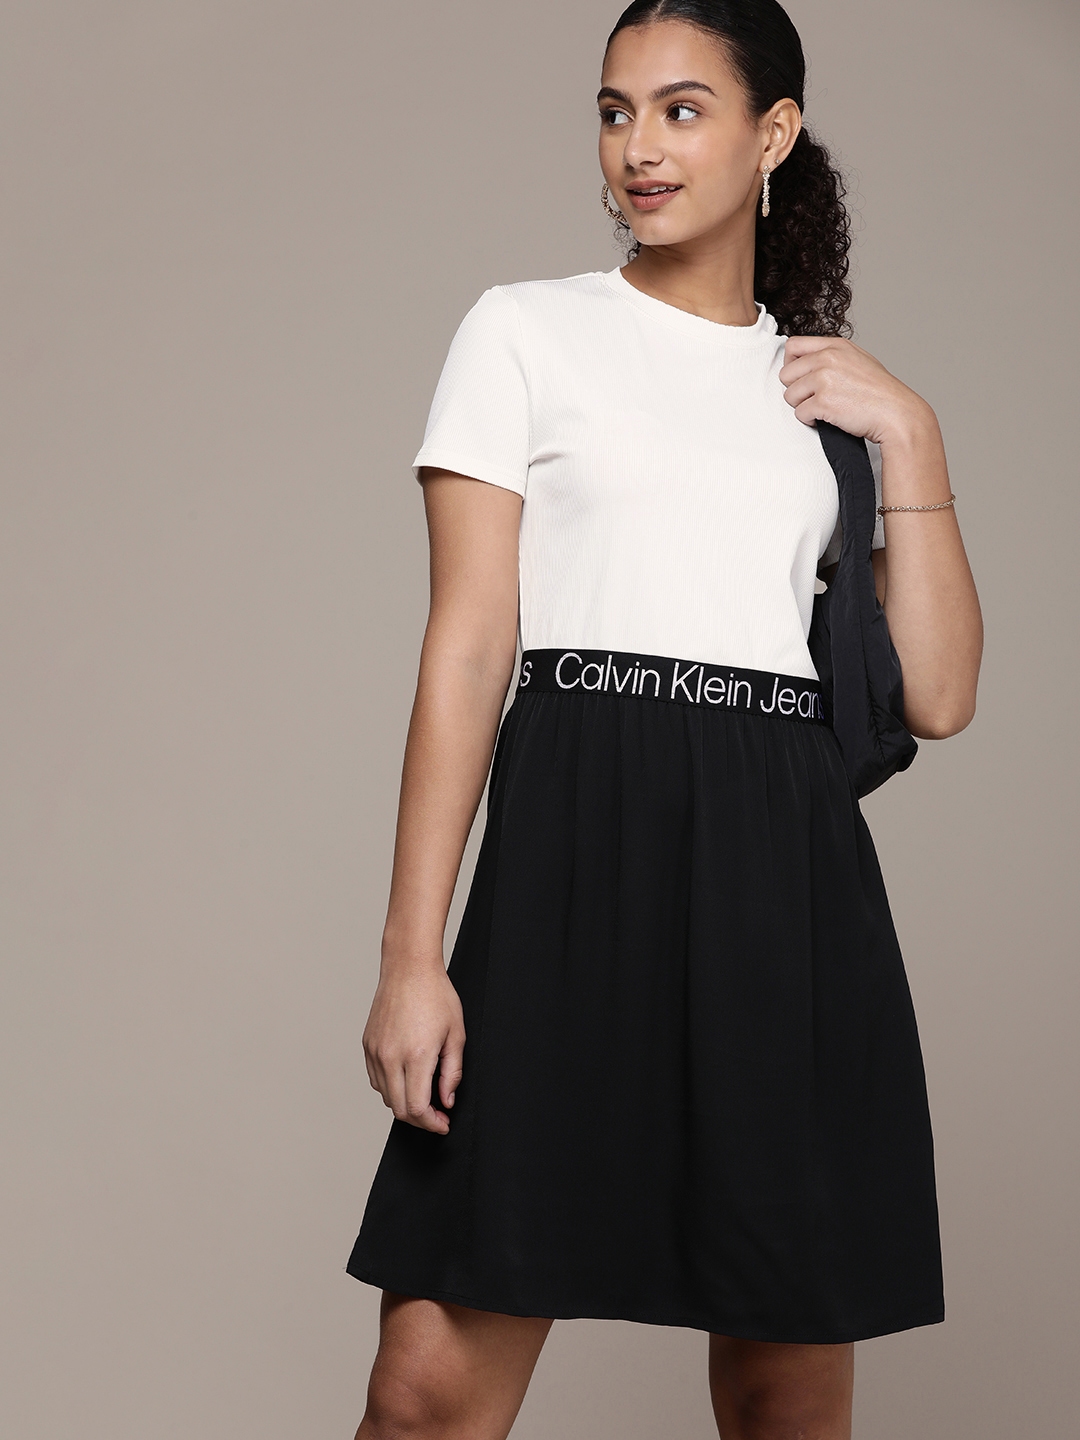 Calvin Klein Bow Above Knee & Mini Dresses for Women